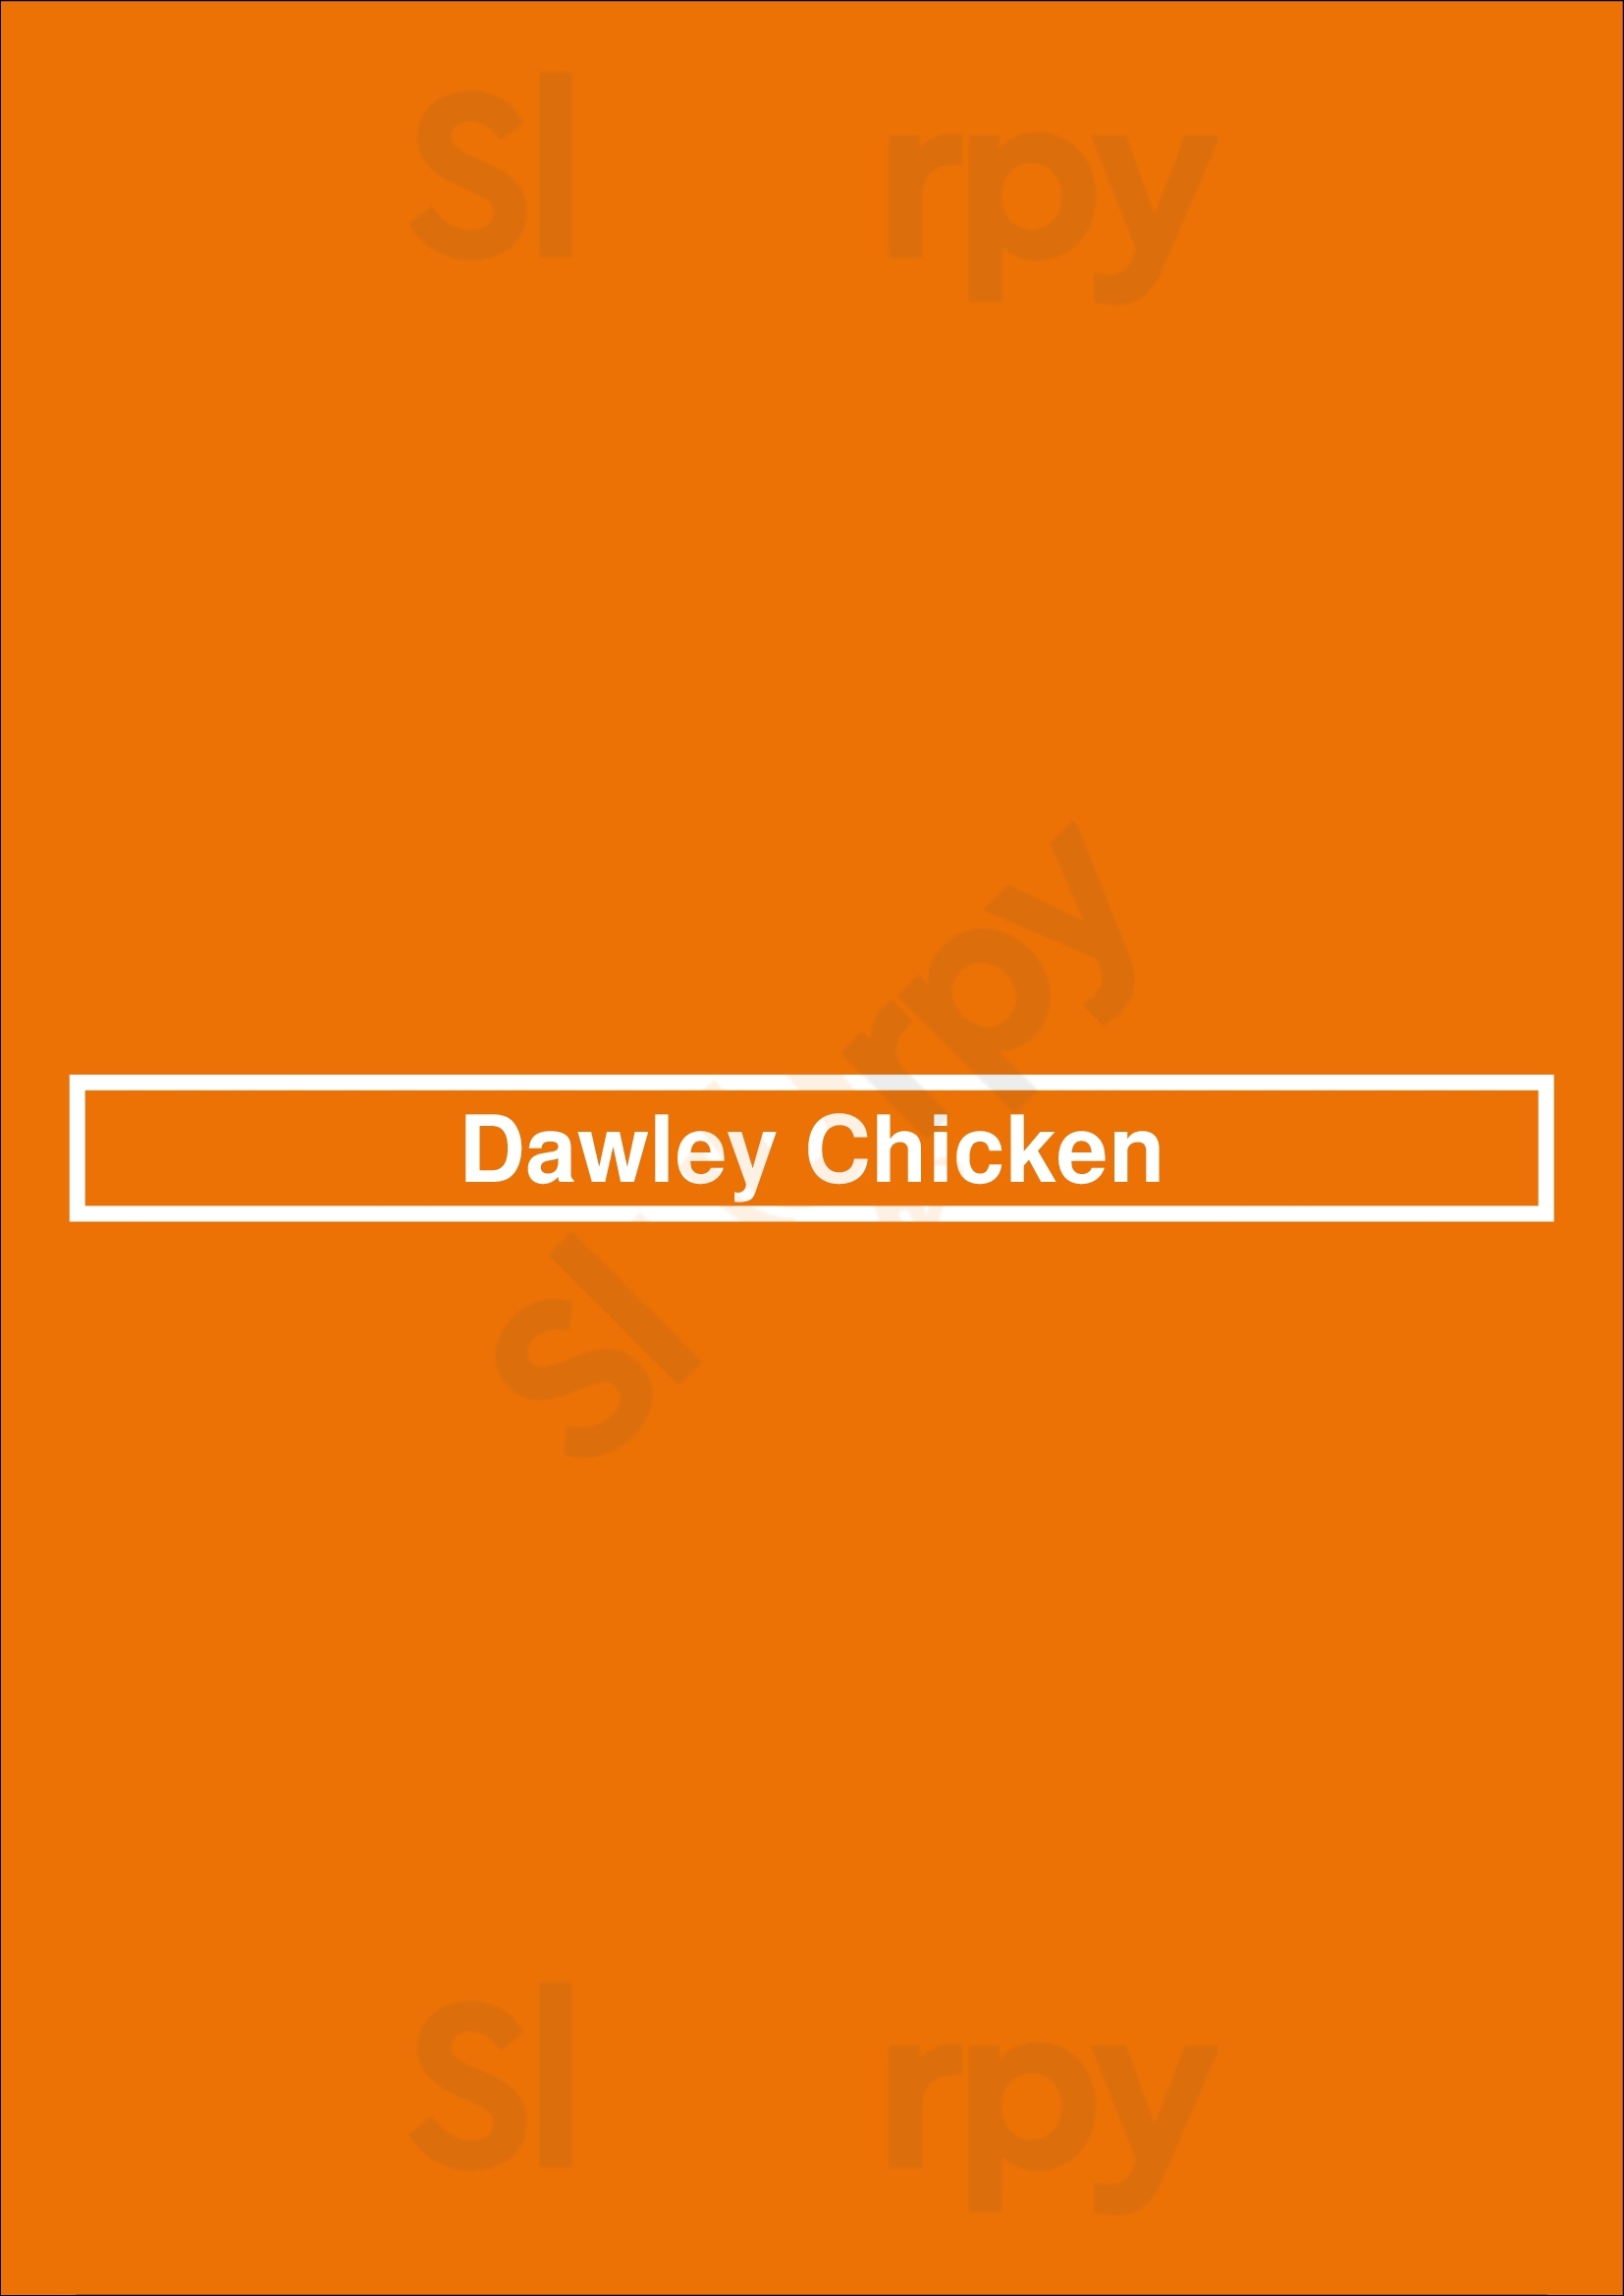 Dawley Chicken London Menu - 1